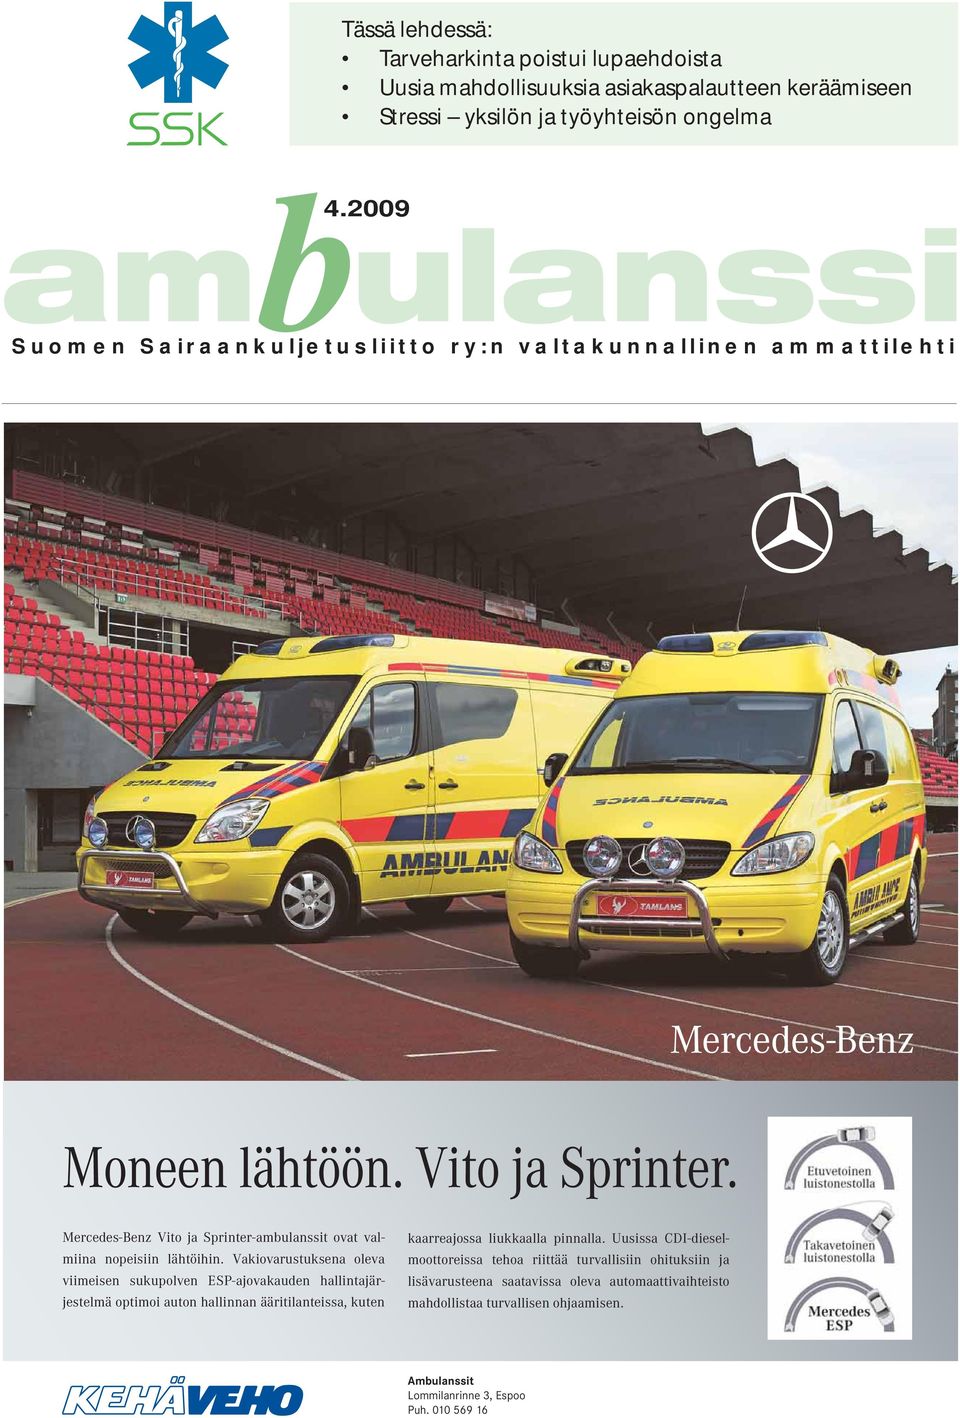 Mercedes-Benz Vito ja Sprinter-ambulanssit ovat valmiina nopeisiin lähtöihin.